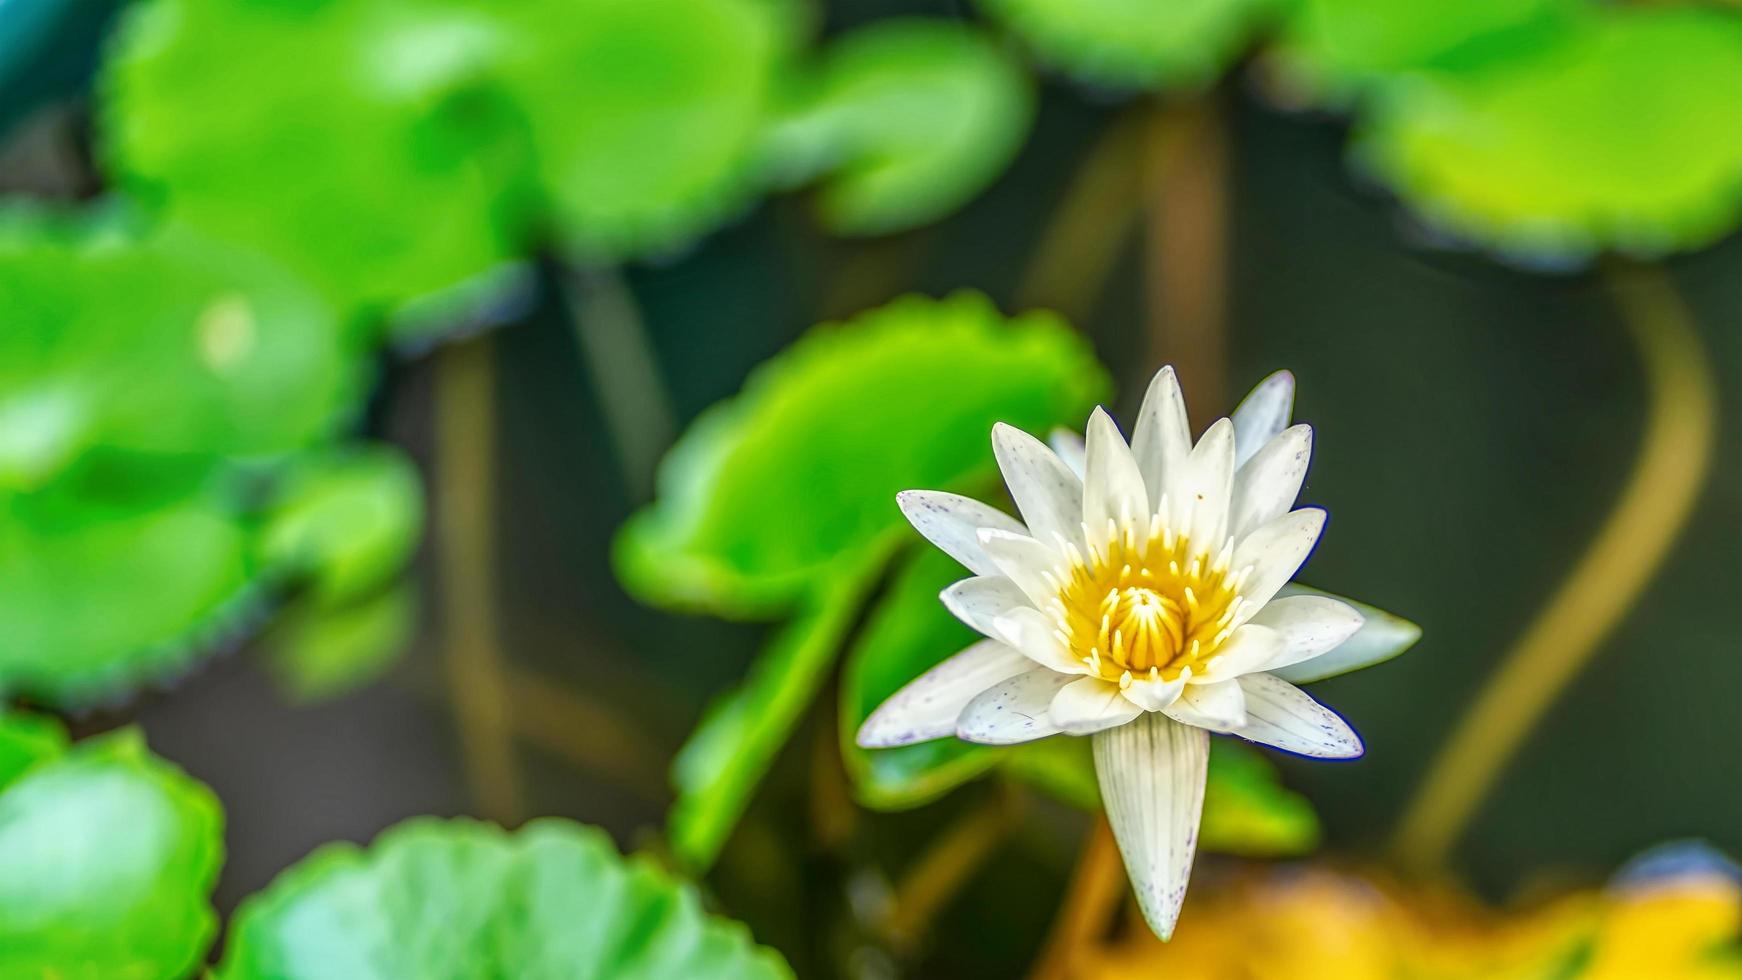 le lotus est de nombreuses couleurs et magnifique dans les étangs, est un symbole du bouddhisme. photo